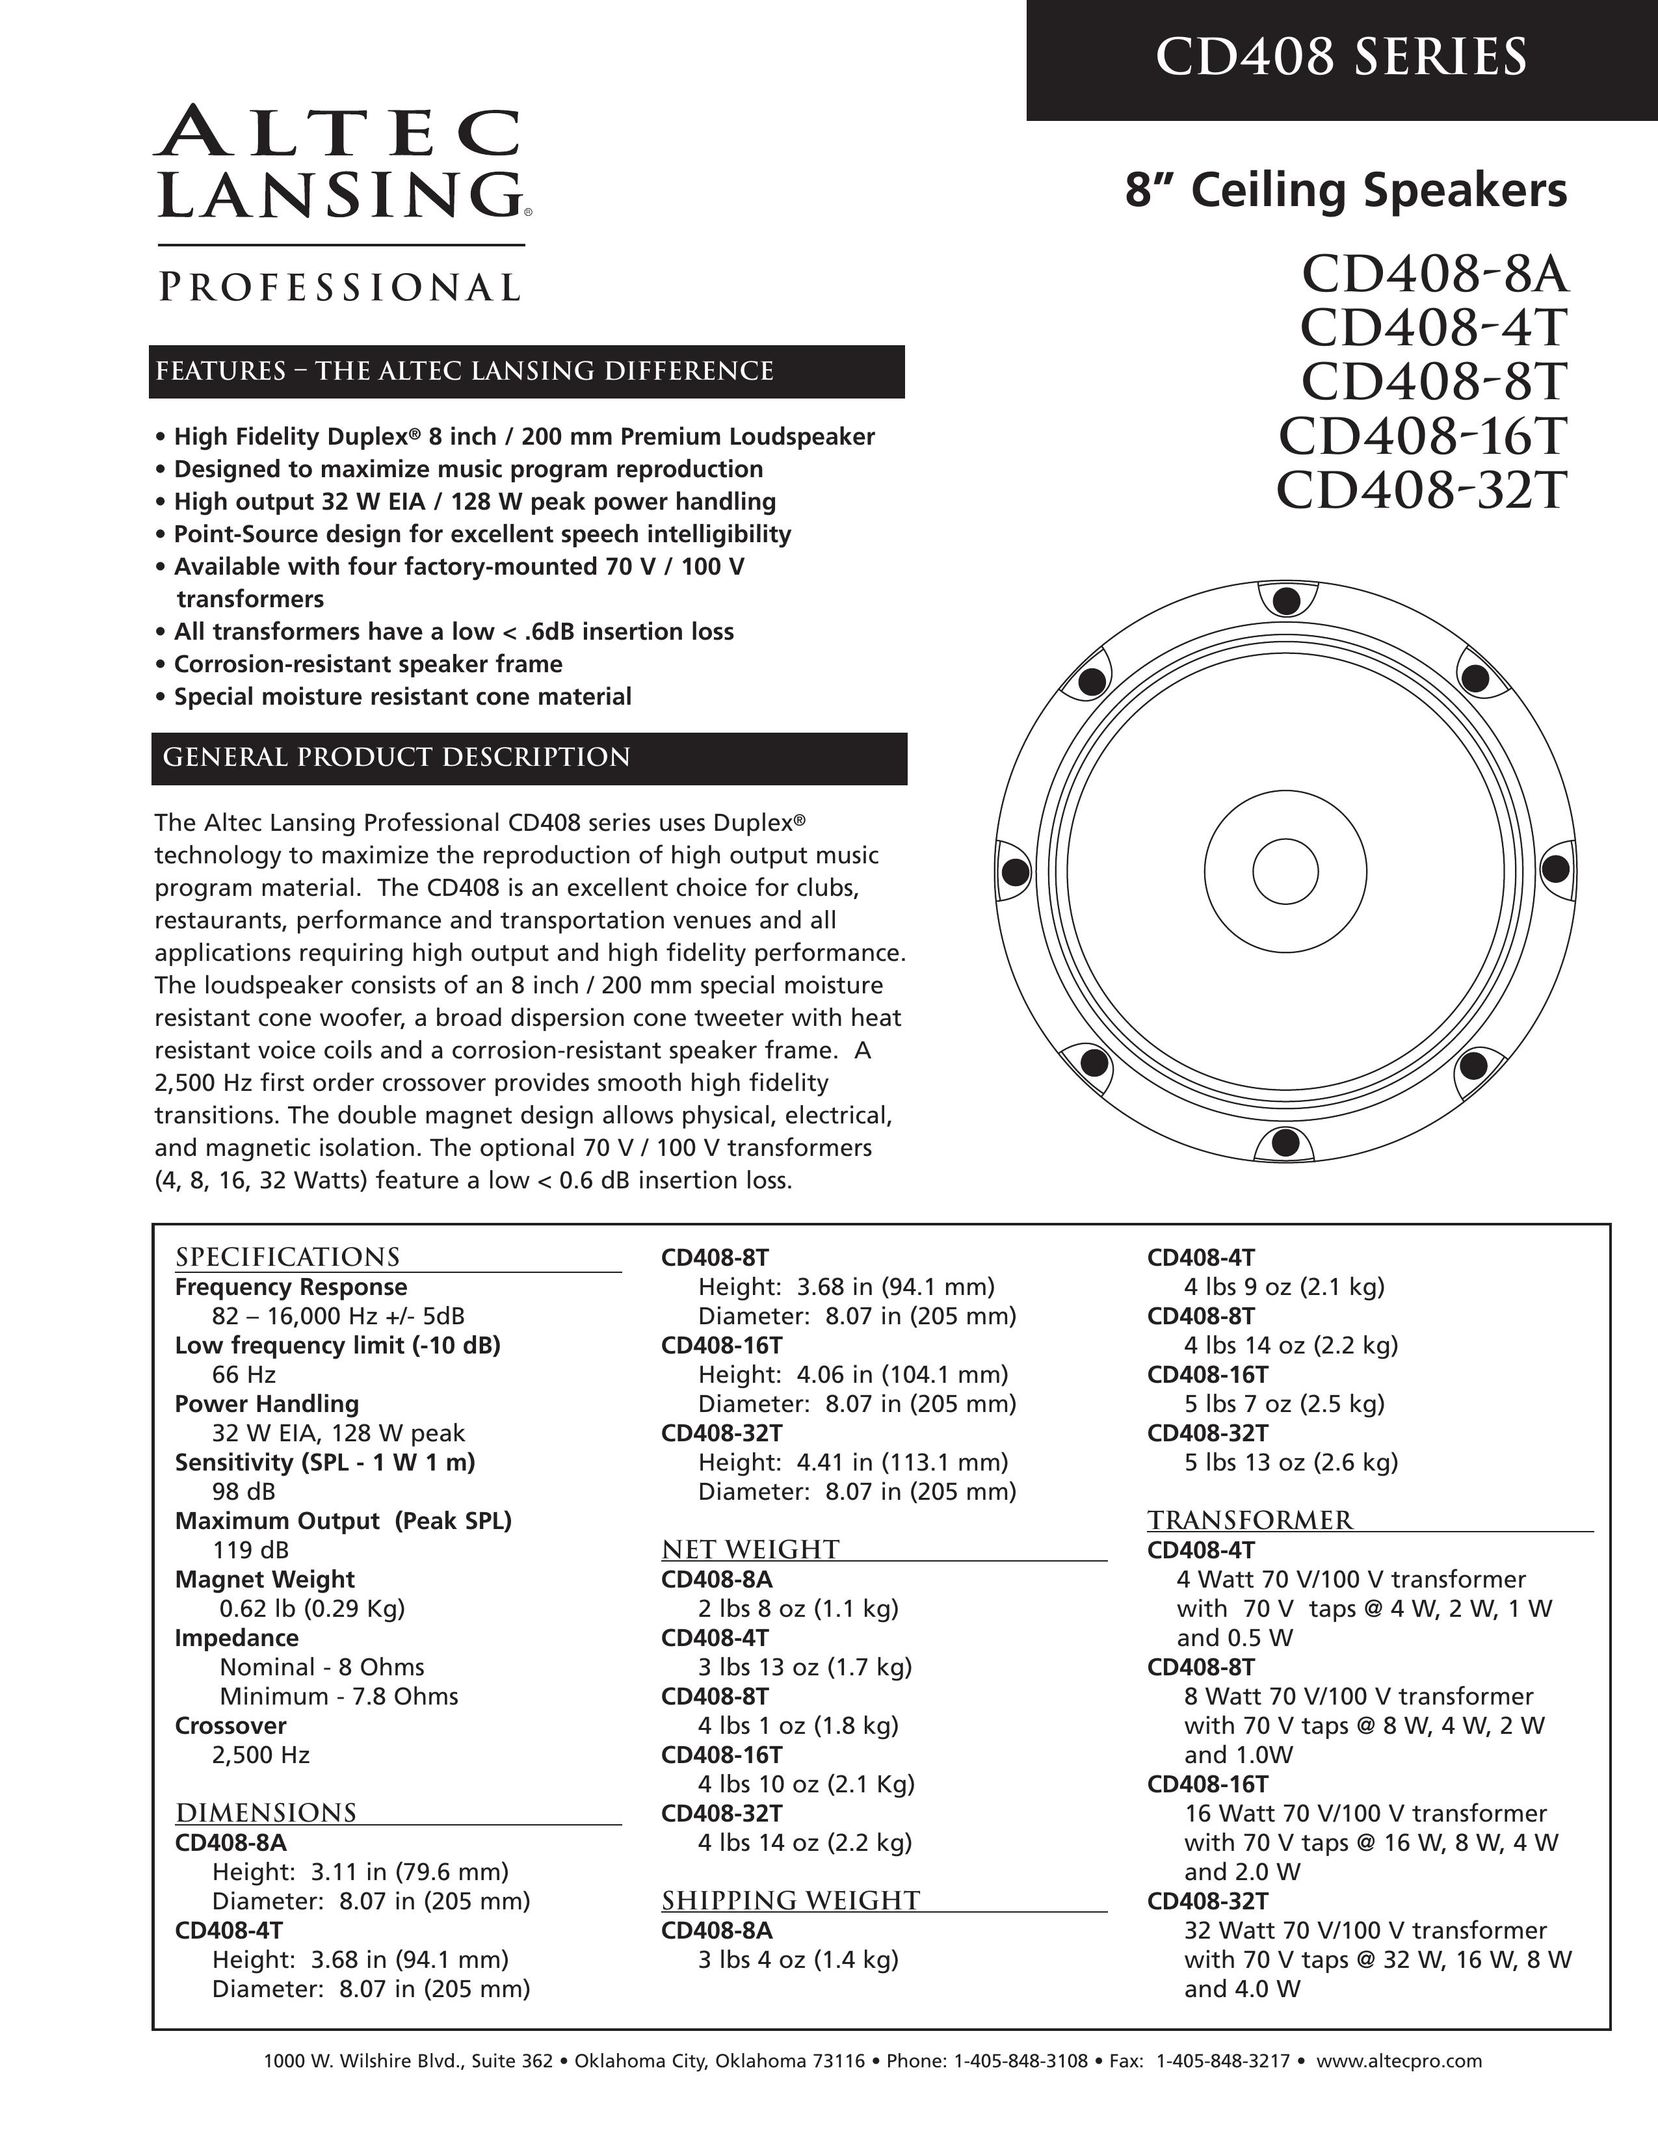 Altec Lansing CD408-16T Speaker User Manual